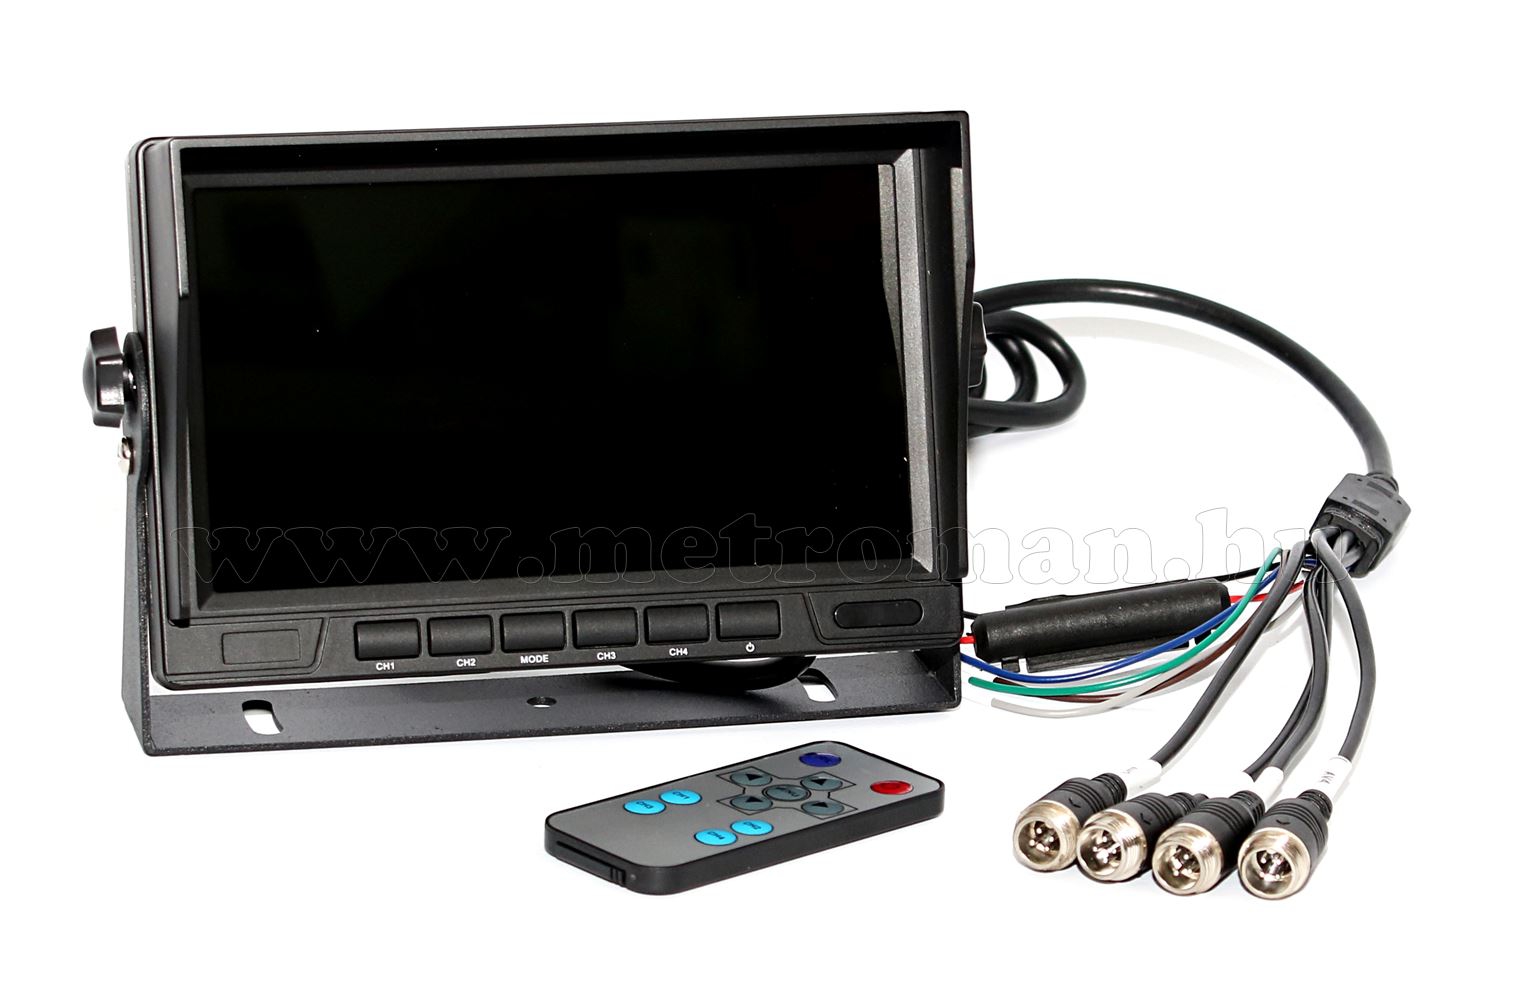 Ipari kivitelű autó, kamion, busz, munkagép LCD monitor tolatókamerához MM3659-QUAD 12/24V